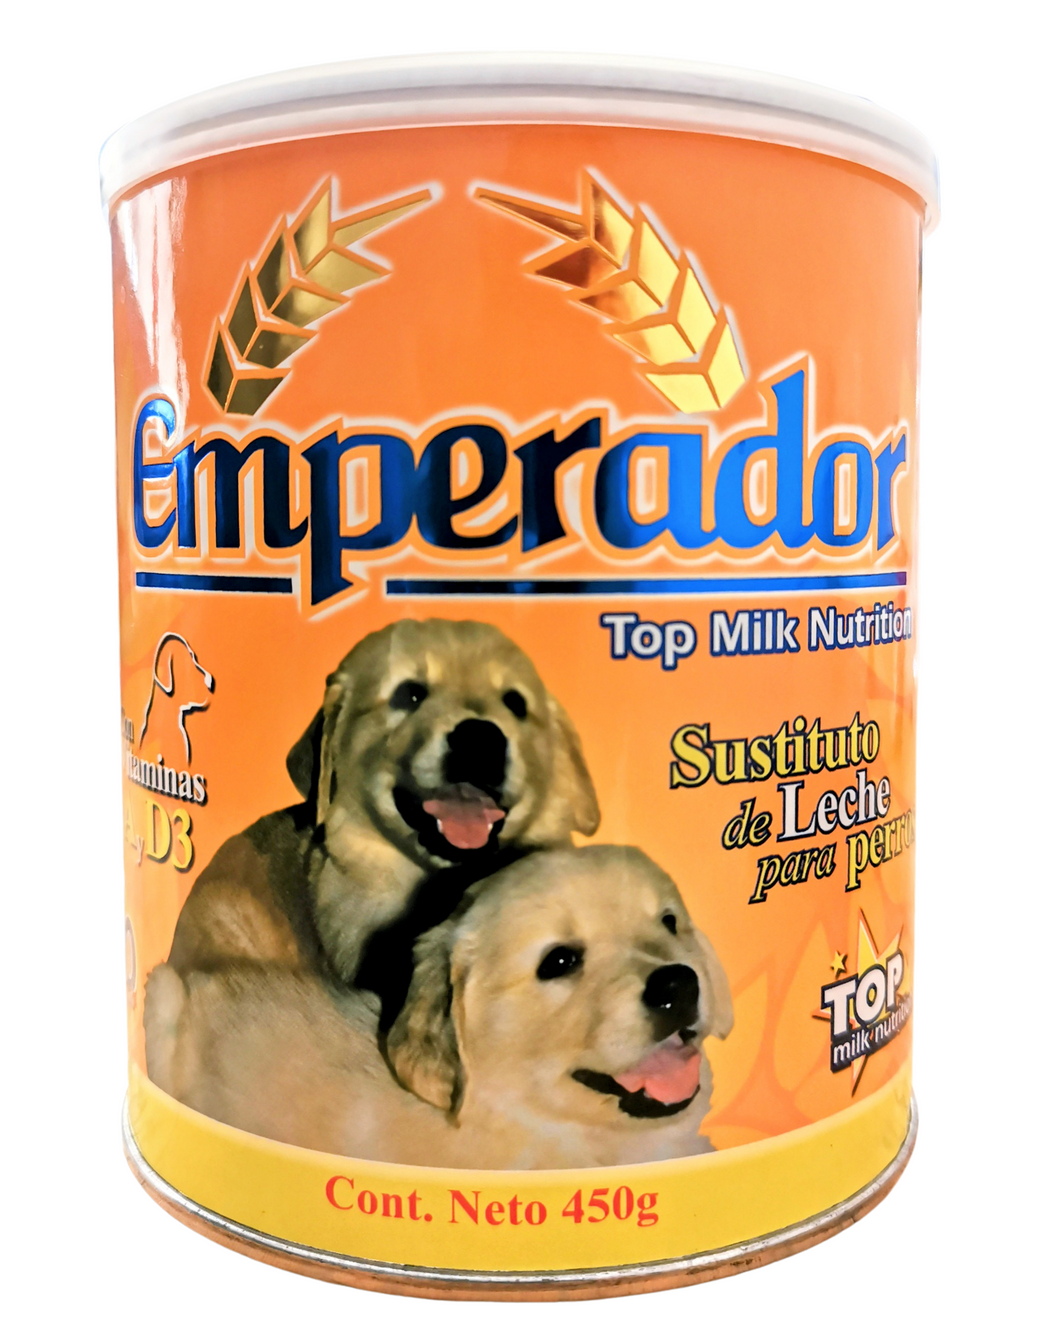 Emperador sustituto de leche para perros